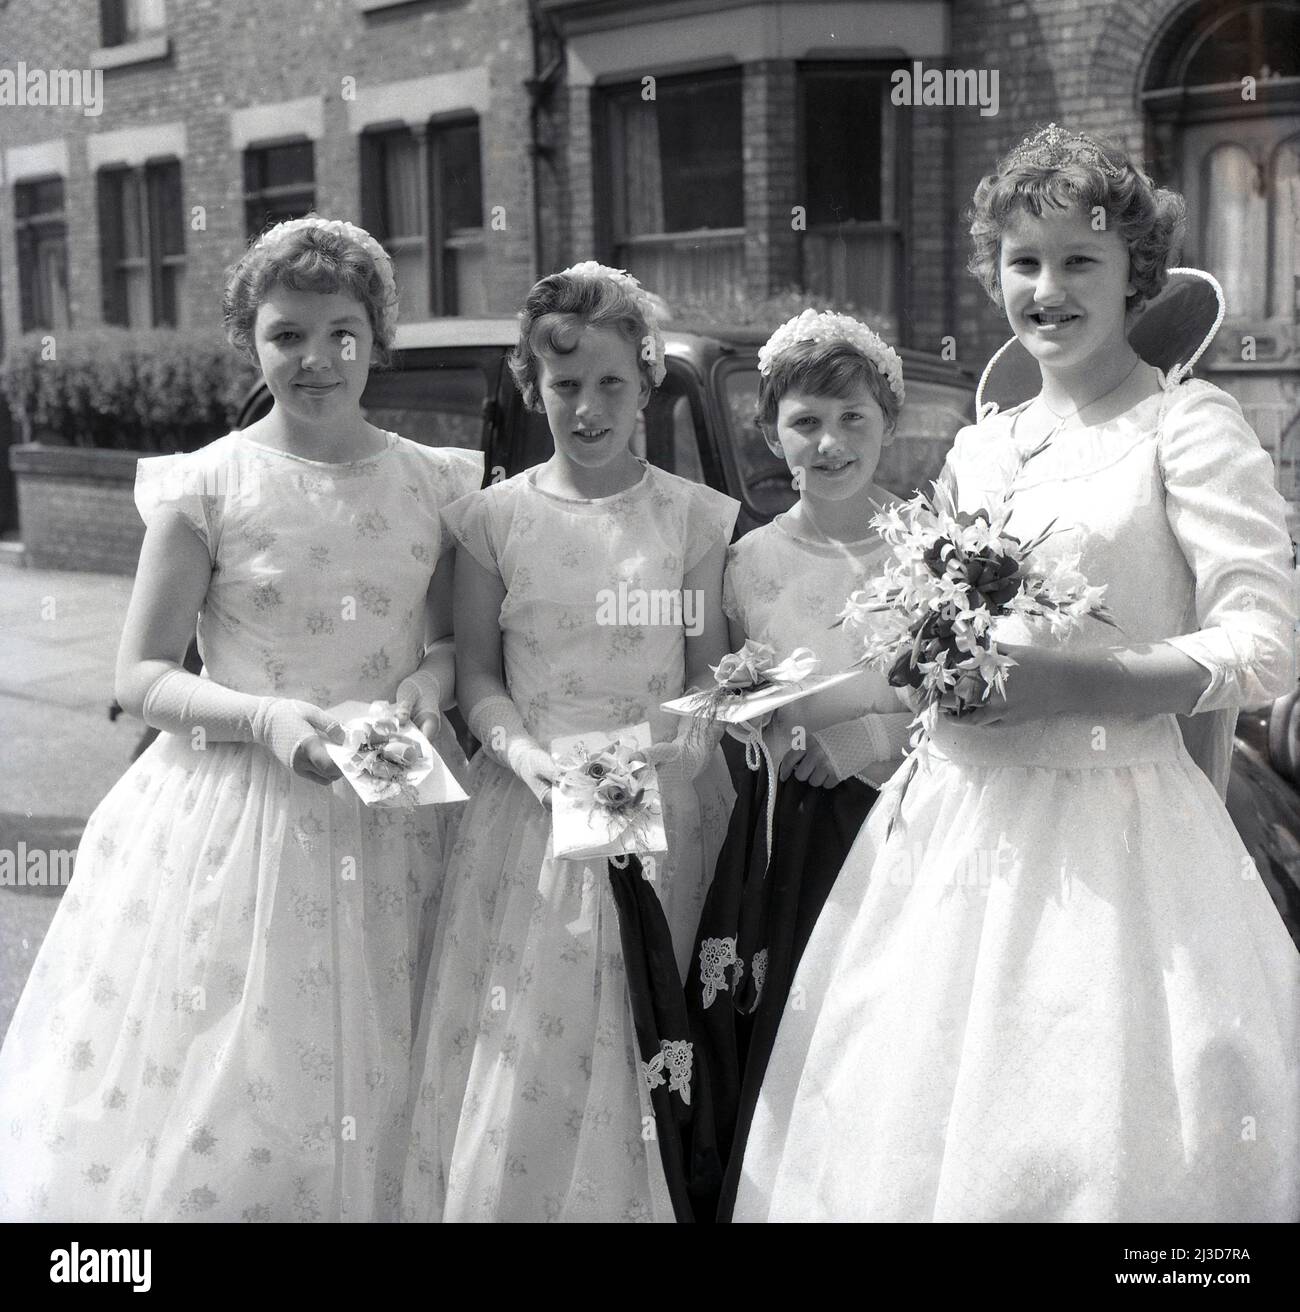 1961, historische Prozession am Maifeiertag, die lokale May Queen mit ihren jungen Mädchen, ihrem Gefolge, die alle ihre Blumenstrauß während der Frühlingsfeierlichkeiten am Maifeiertag halten, während sie für ein Foto stehen, draußen in einer Straße viktorianischer Reihenhäuser in Stockport, Manchester, England, Großbritannien. Stockfoto